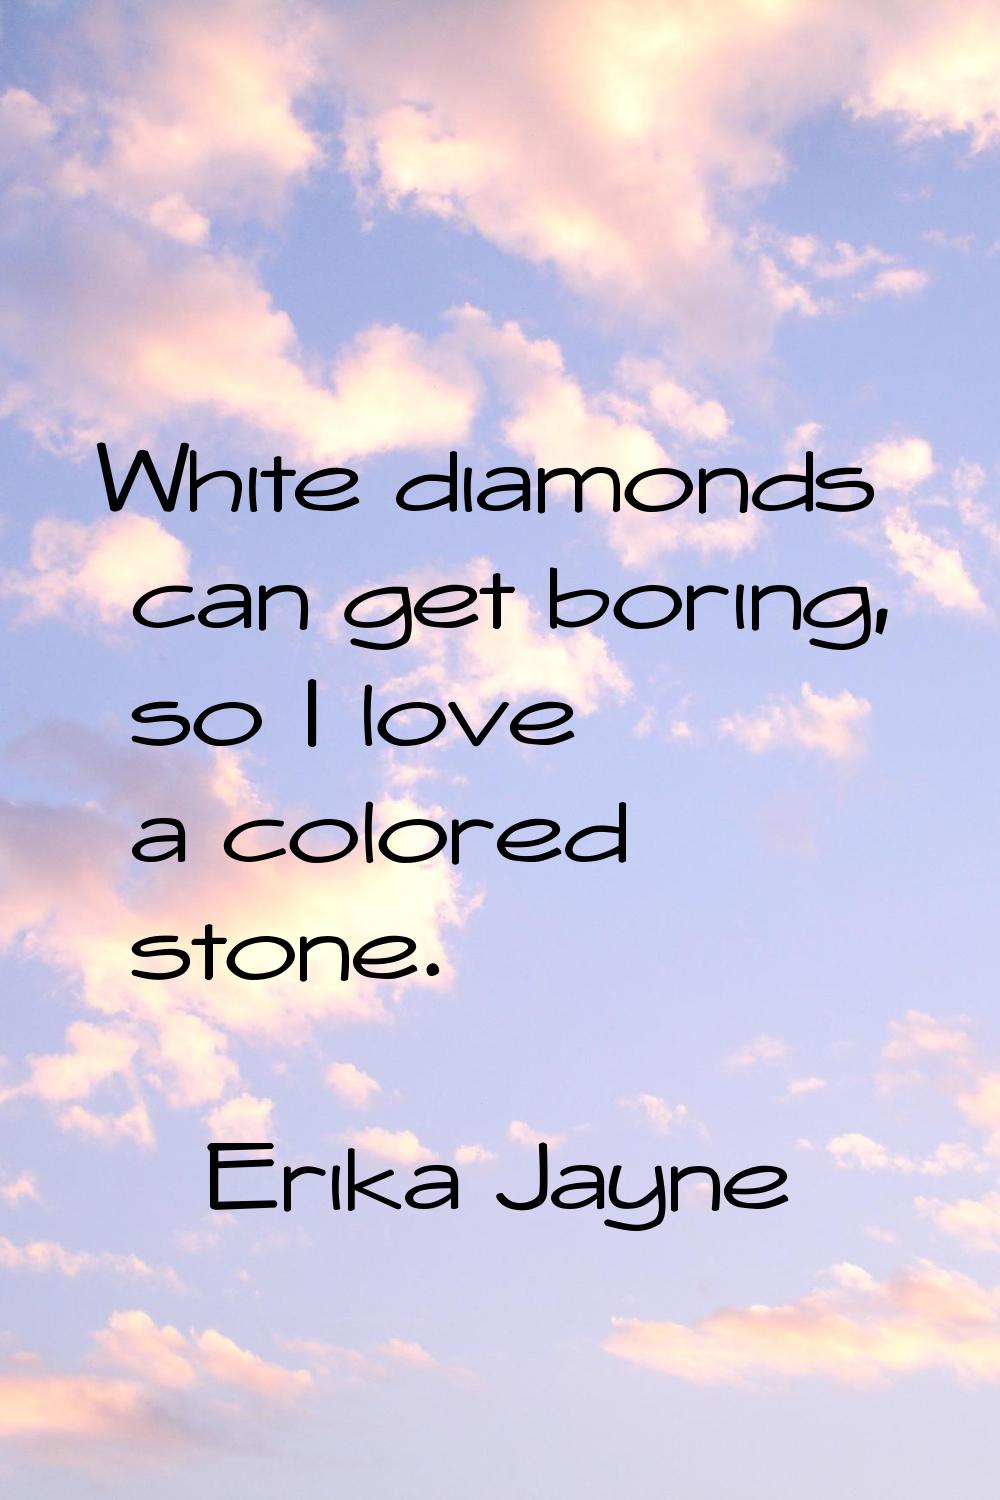 White diamonds can get boring, so I love a colored stone.